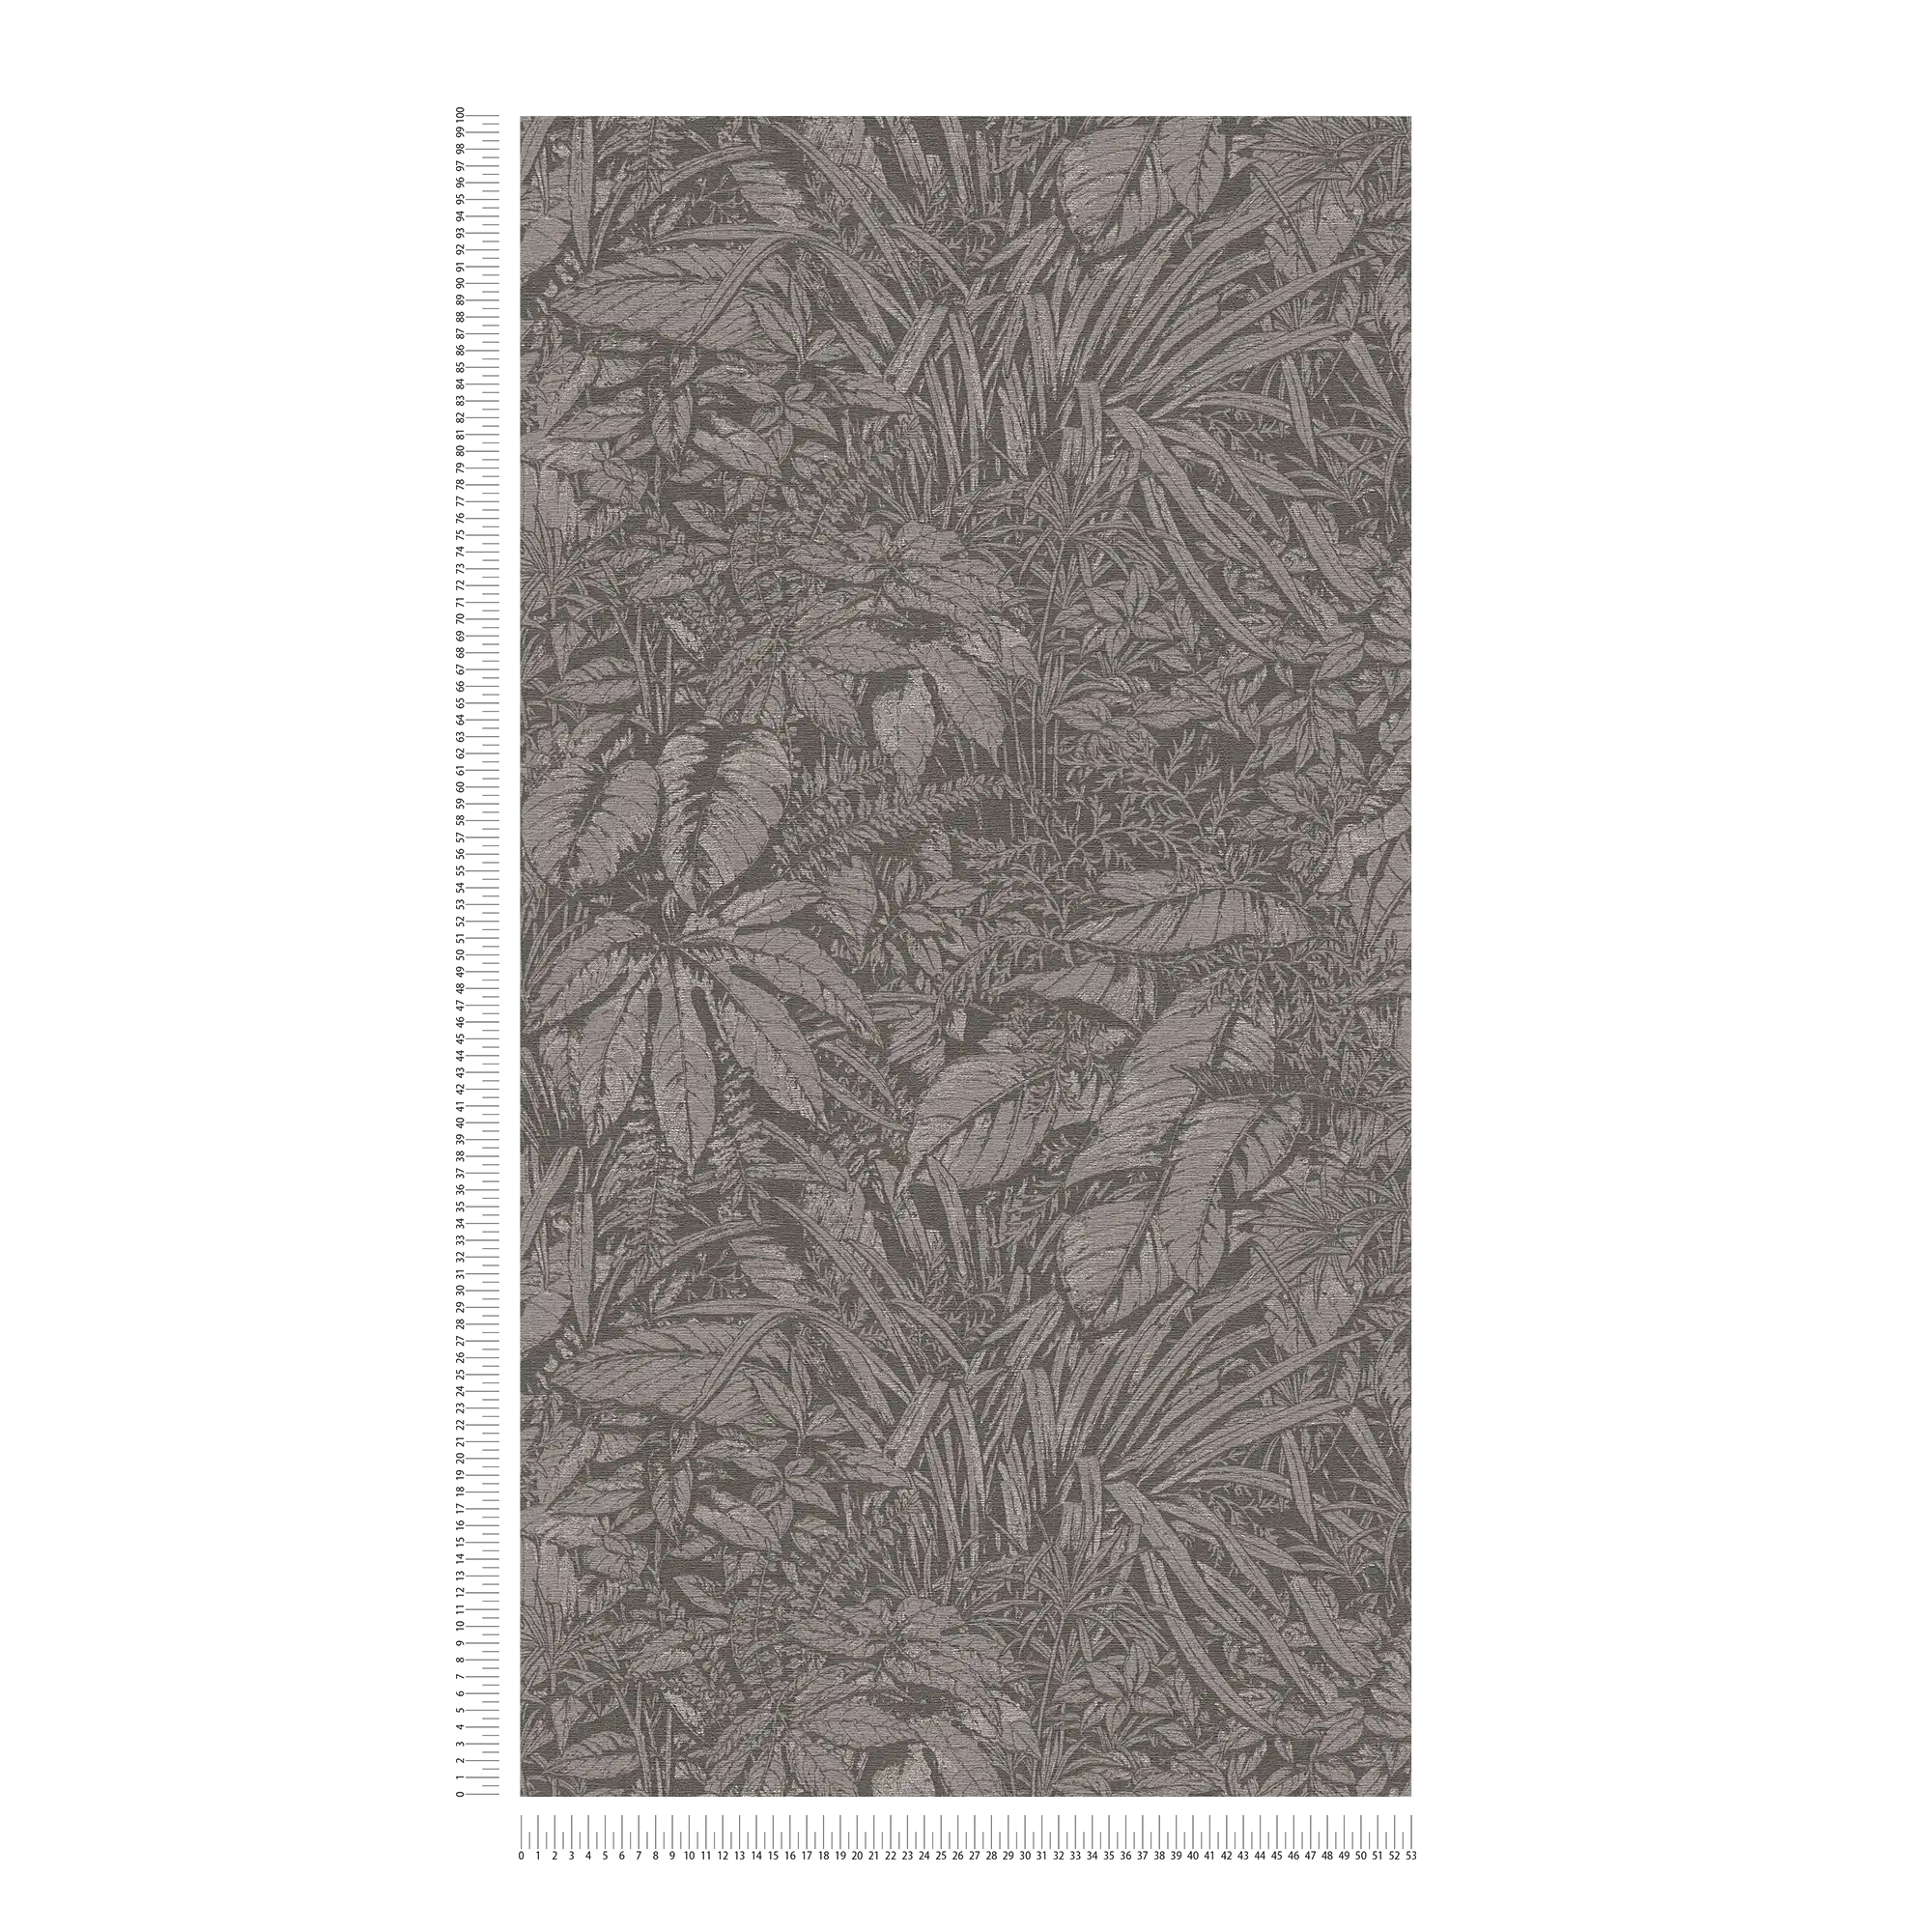             papier peint en papier intissé avec motif floral à feuilles - gris, noir, argenté
        